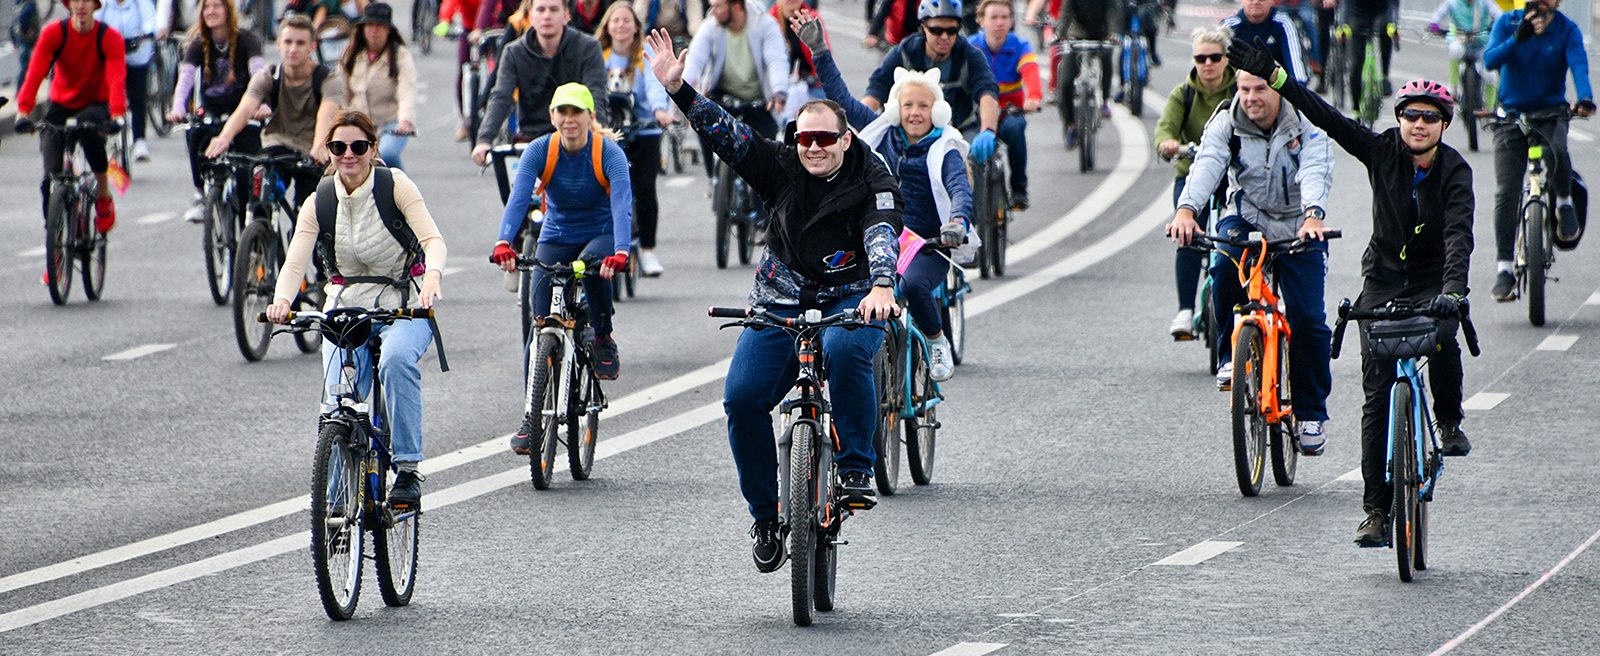 Участники смогли посмотреть на выступление велоцирка, посетить творческие и танцевальные мастер-классы. Фото: сайт мэра Москвы